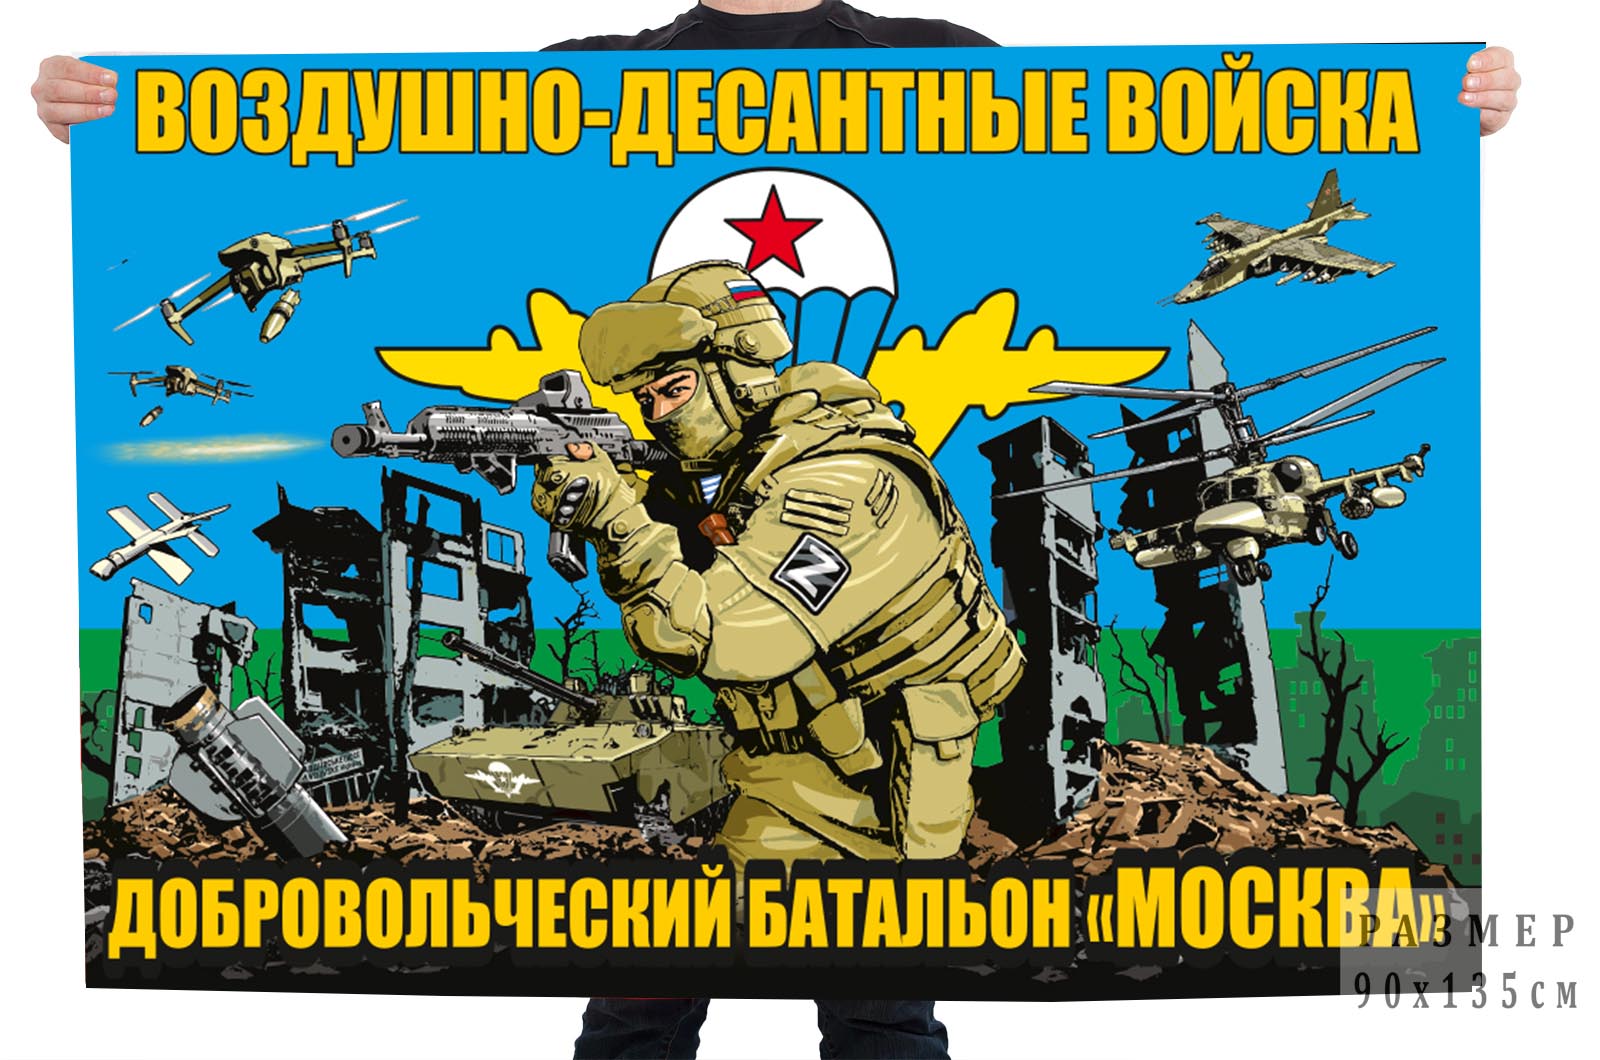 Флаг добровольческого батальона "Москва"